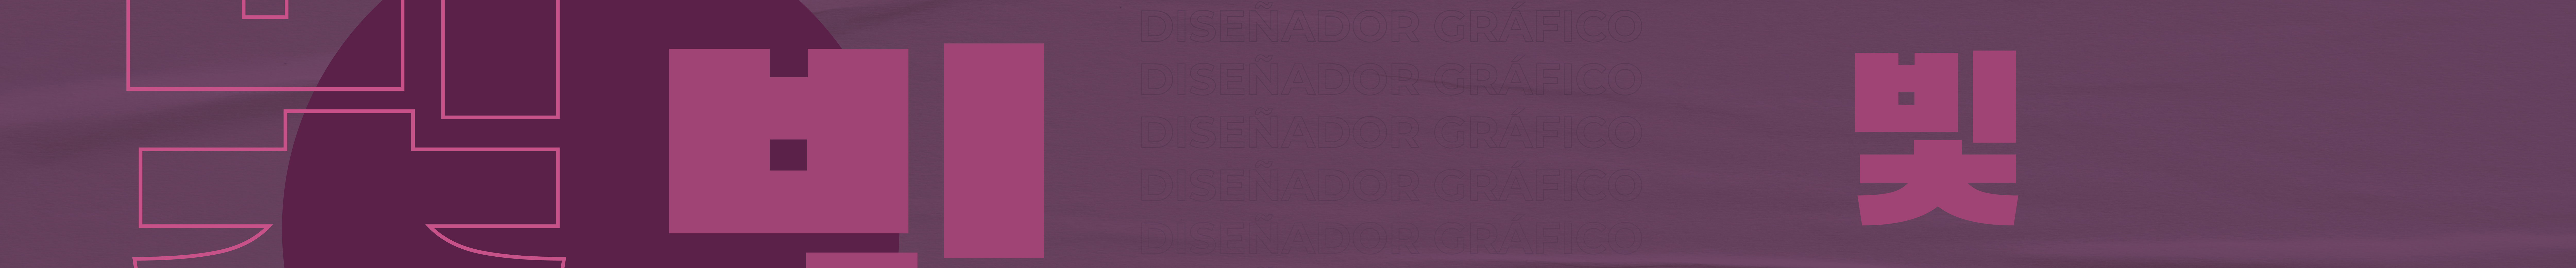 Eduardo Milla's profile banner